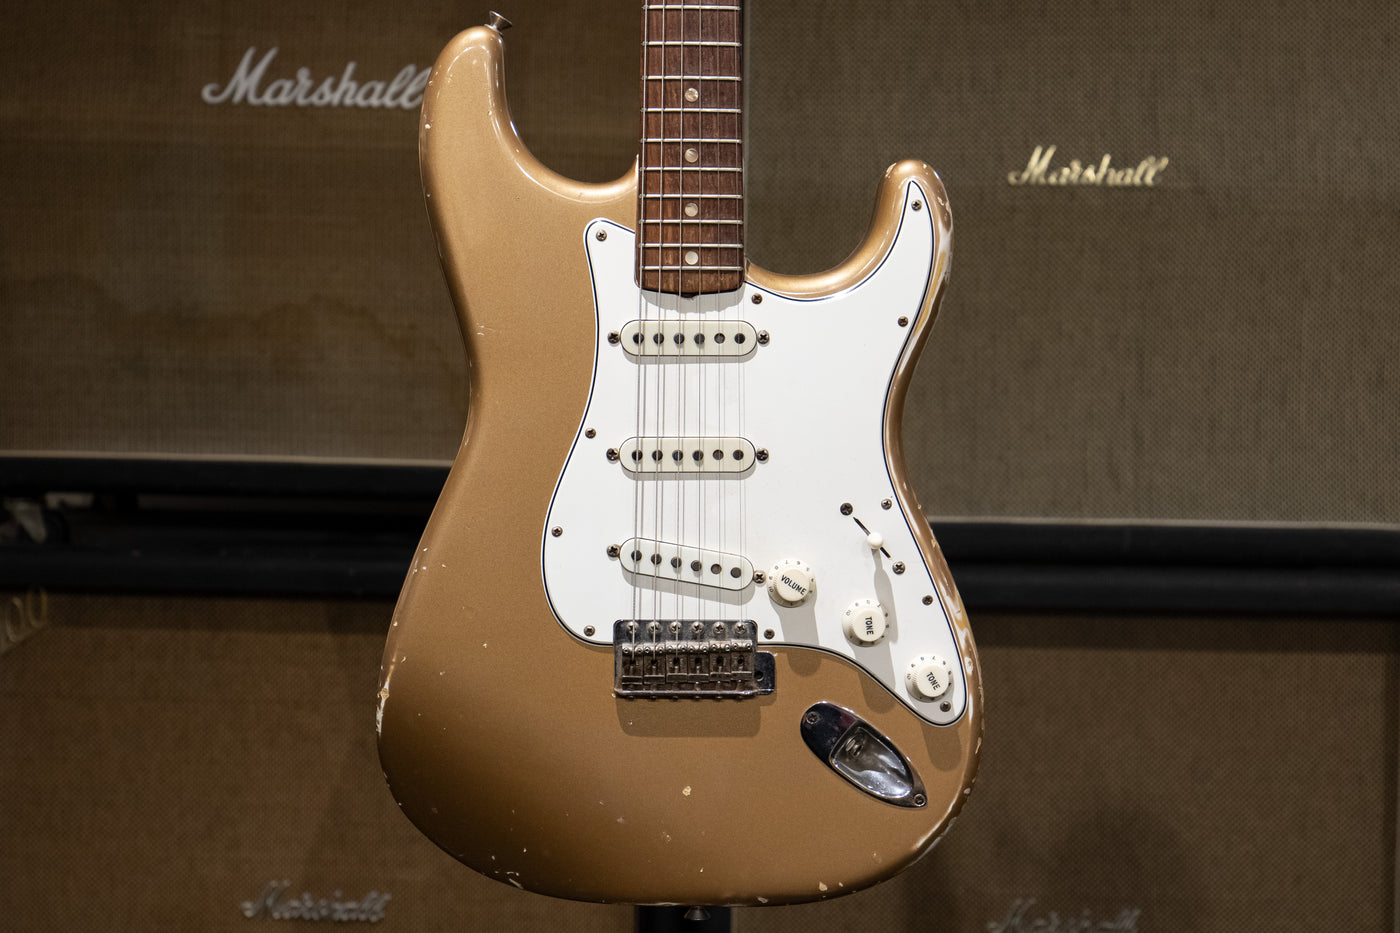 1968 Fender Stratocaster - Firemist Gold